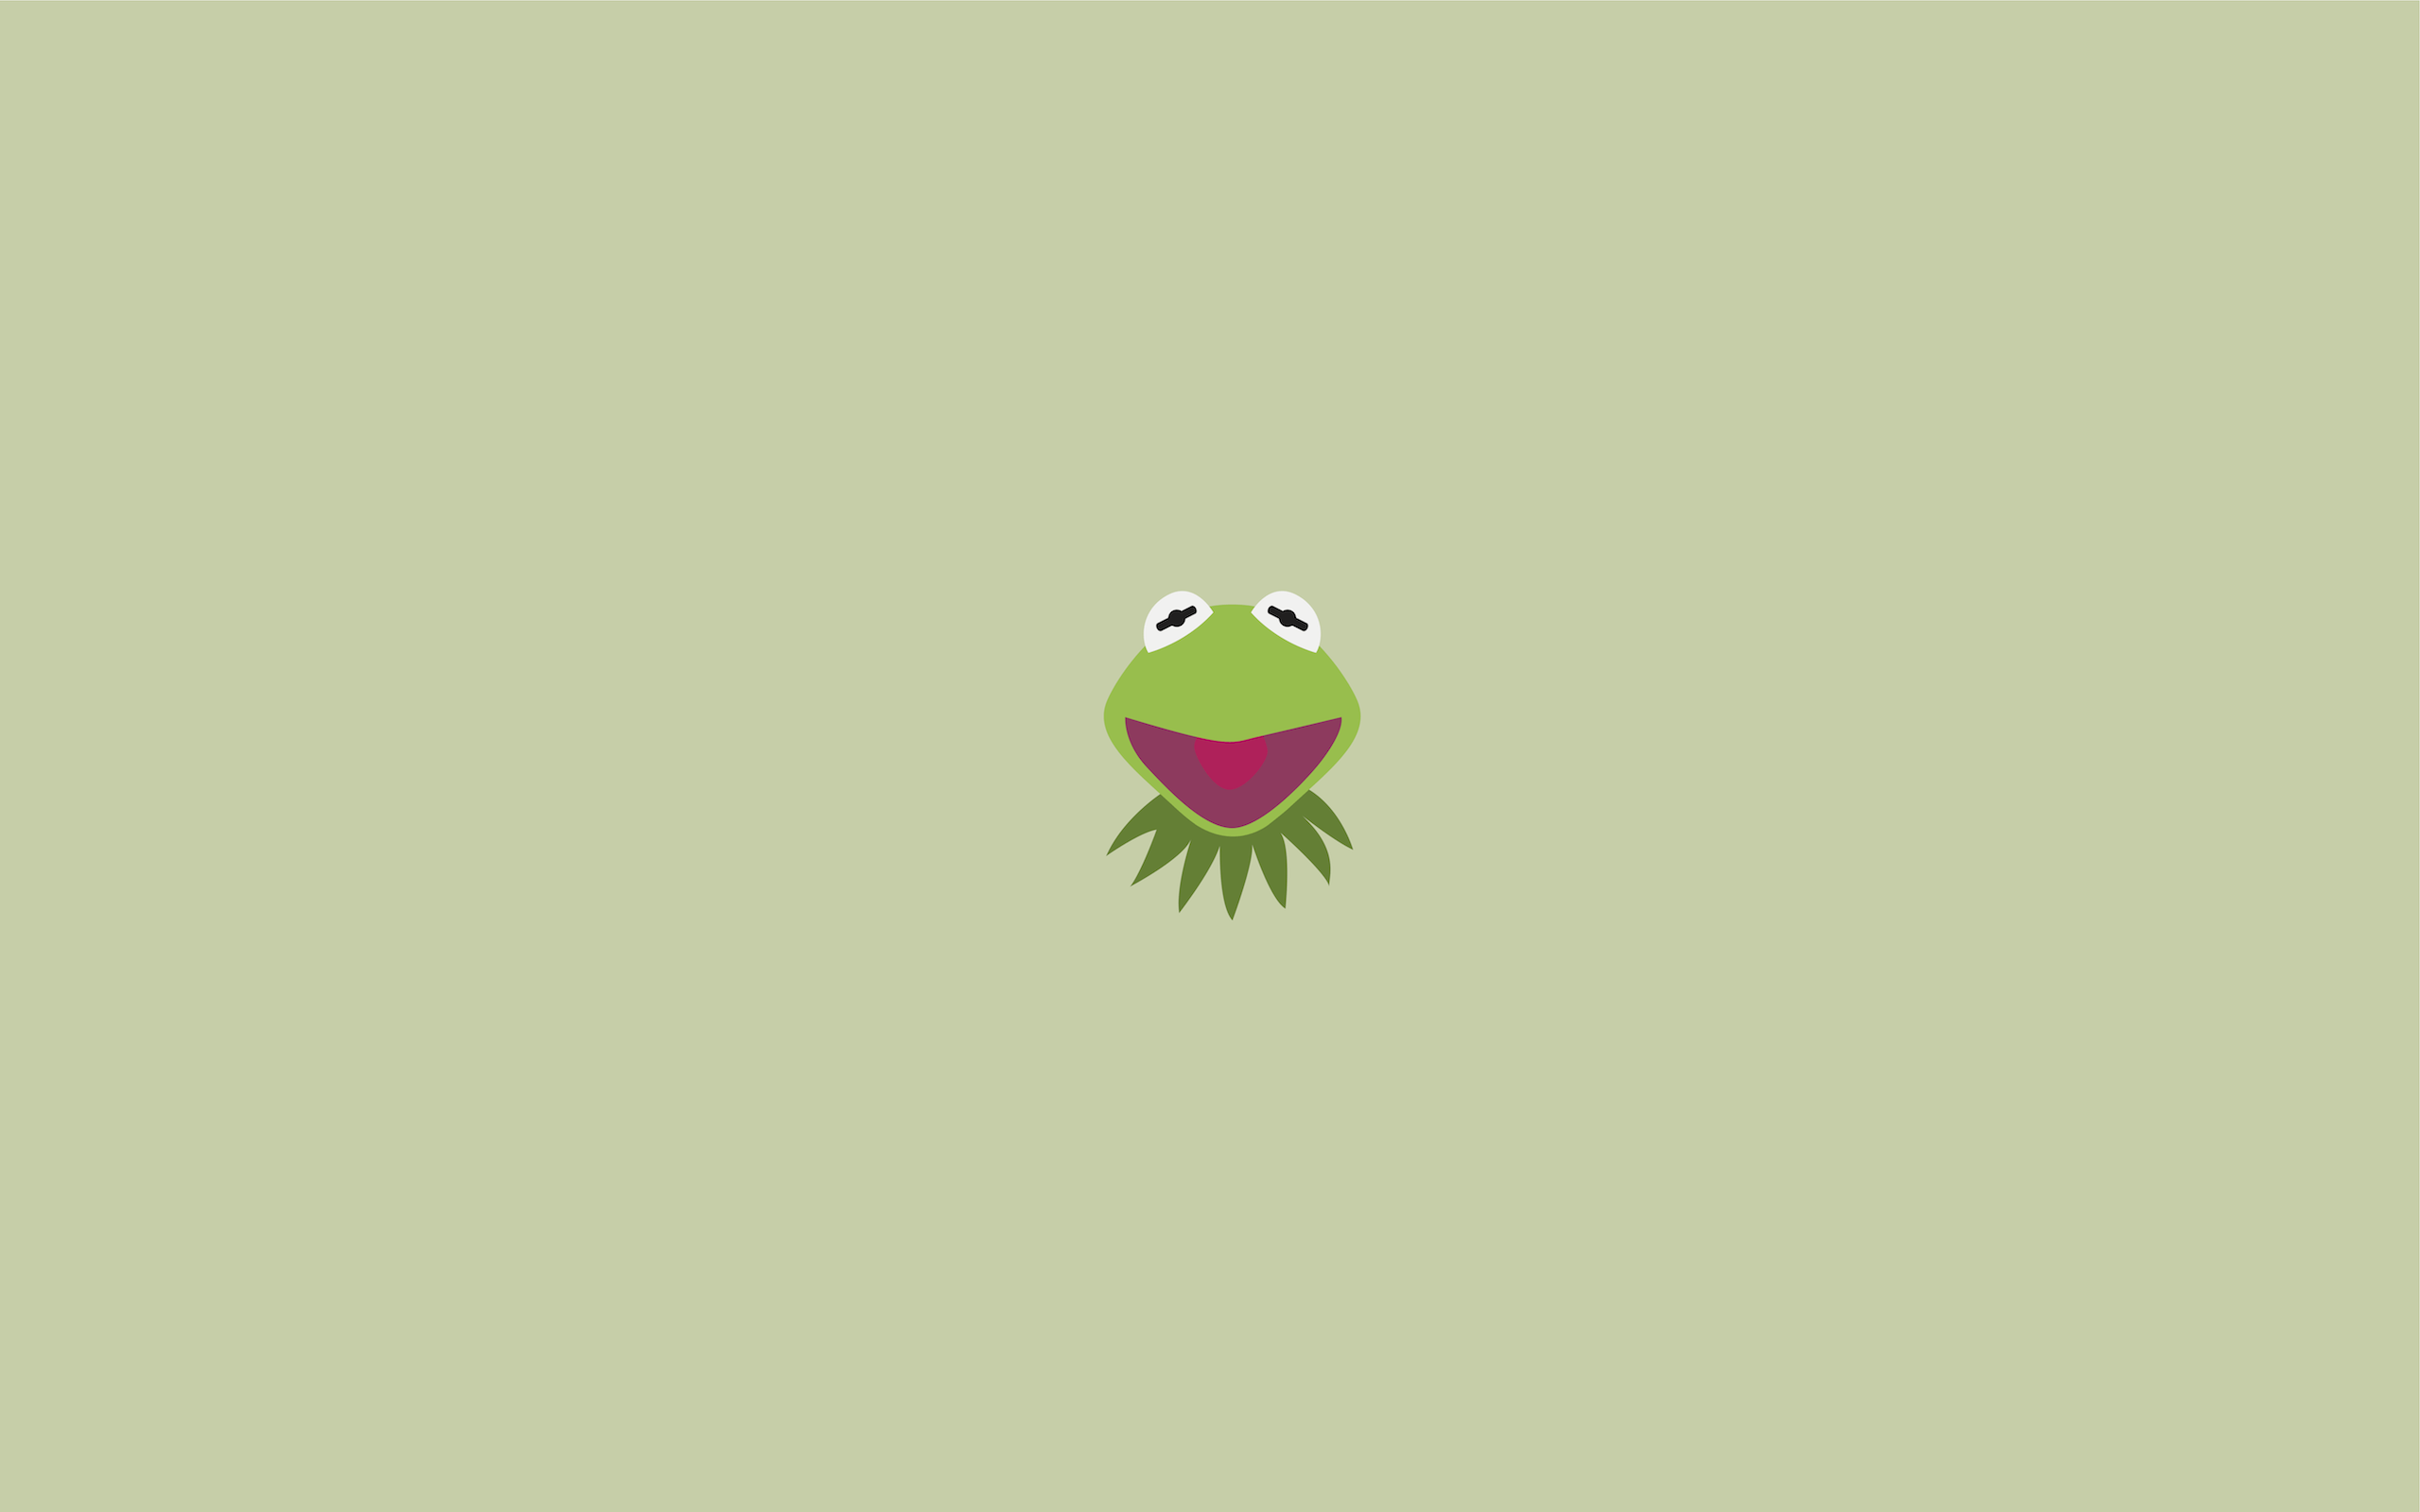 Nếu bạn yêu thích màu xanh lá cây tươi tắn và con ếch Kermit, hãy xem bộ sưu tập hình nền máy tính của WallpaperDog. Hình ảnh được thiết kế với màu xanh đậm và sắc nét, tạo nên một không gian làm việc đầy sức sống và năng động.